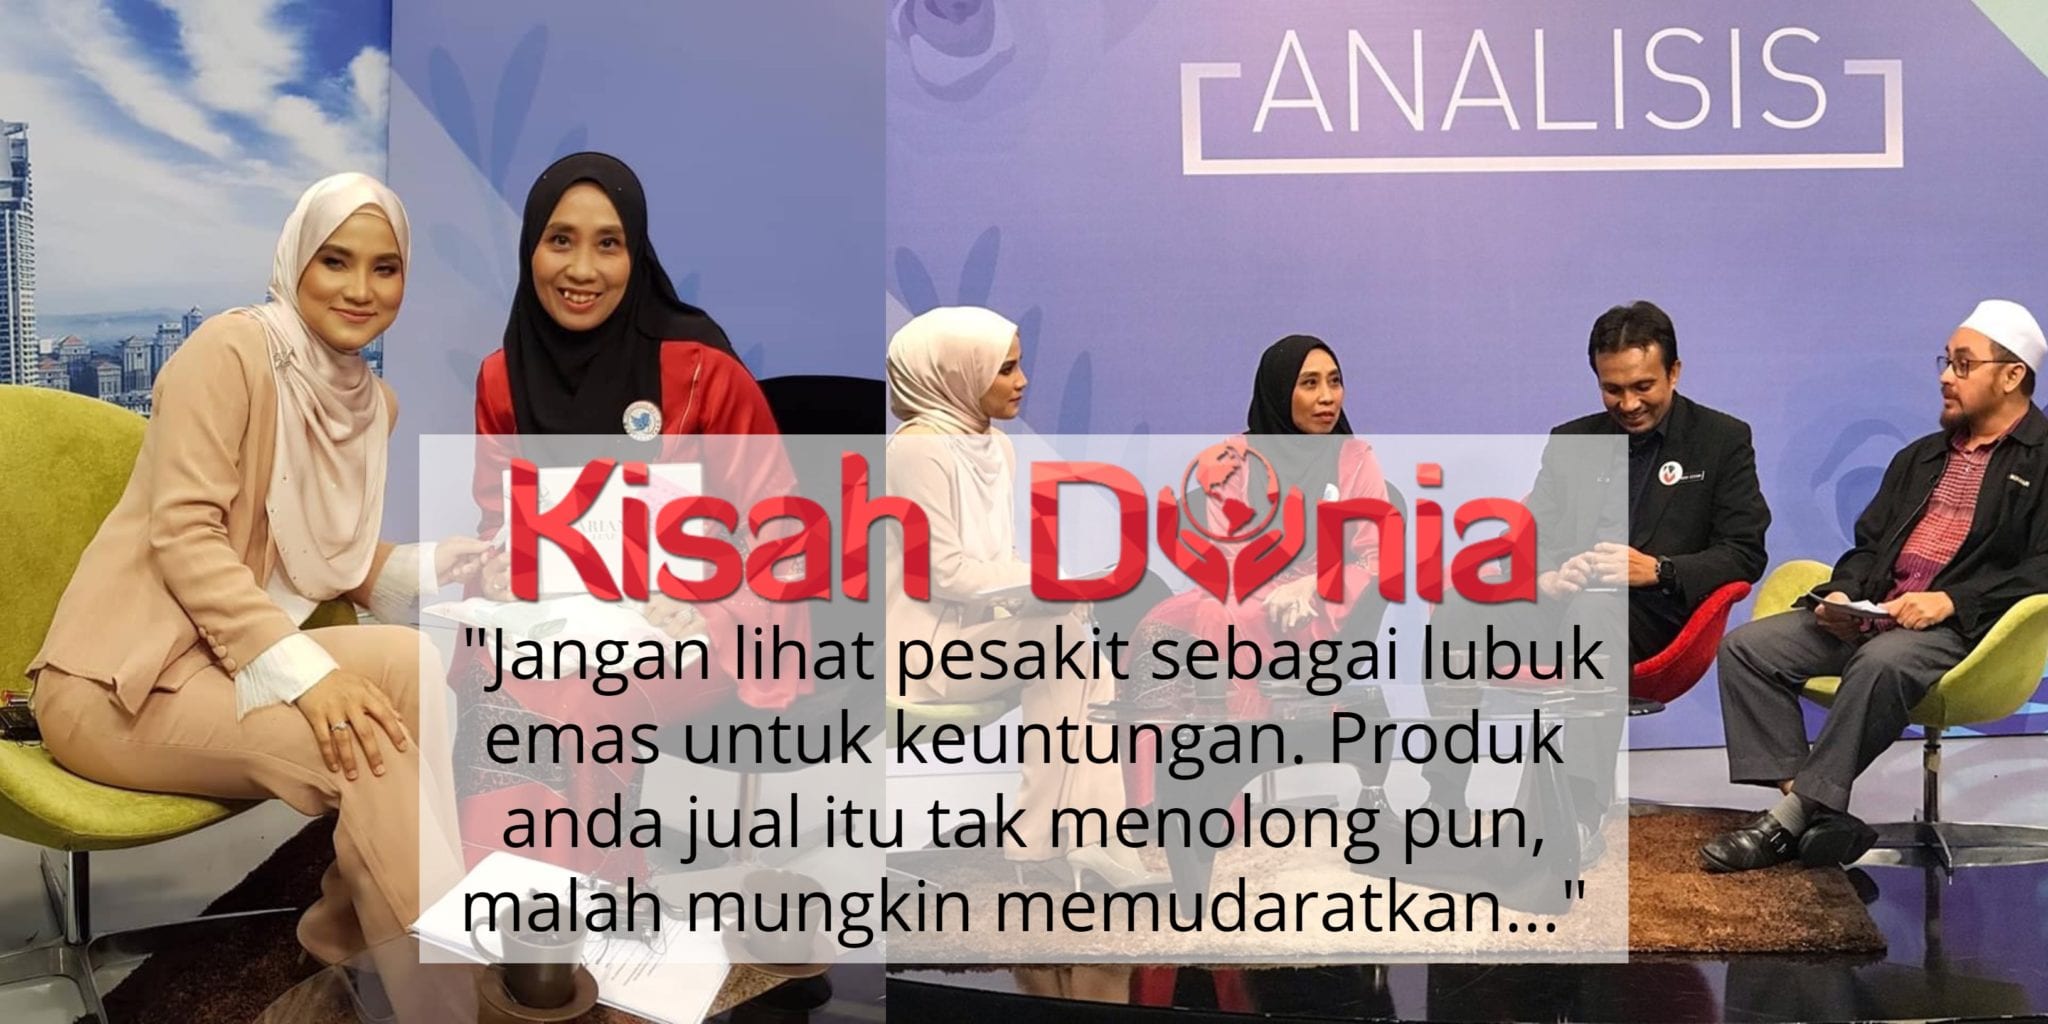 [VIDEO] "Jurujual Jangan Overclaim"- Manipulasi Suplemen, Ini Pesan Dr Rafidah 2